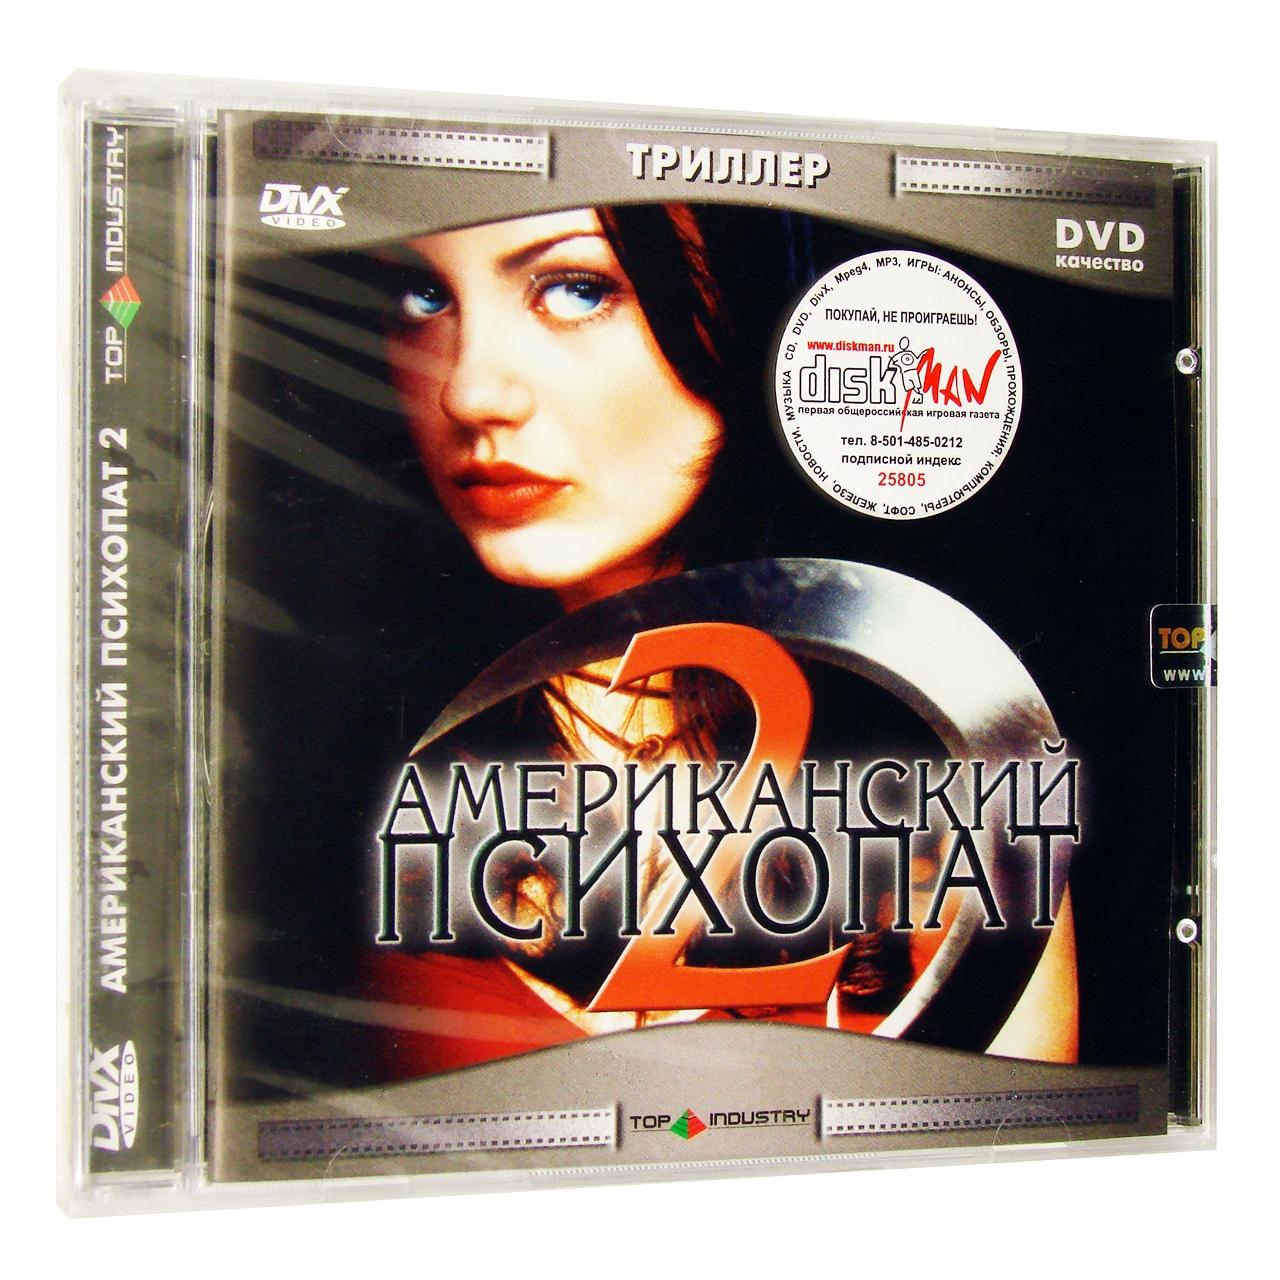 Компьютерный компакт-диск Американский психопат (ПК), фирма "Top Industry", 1CD